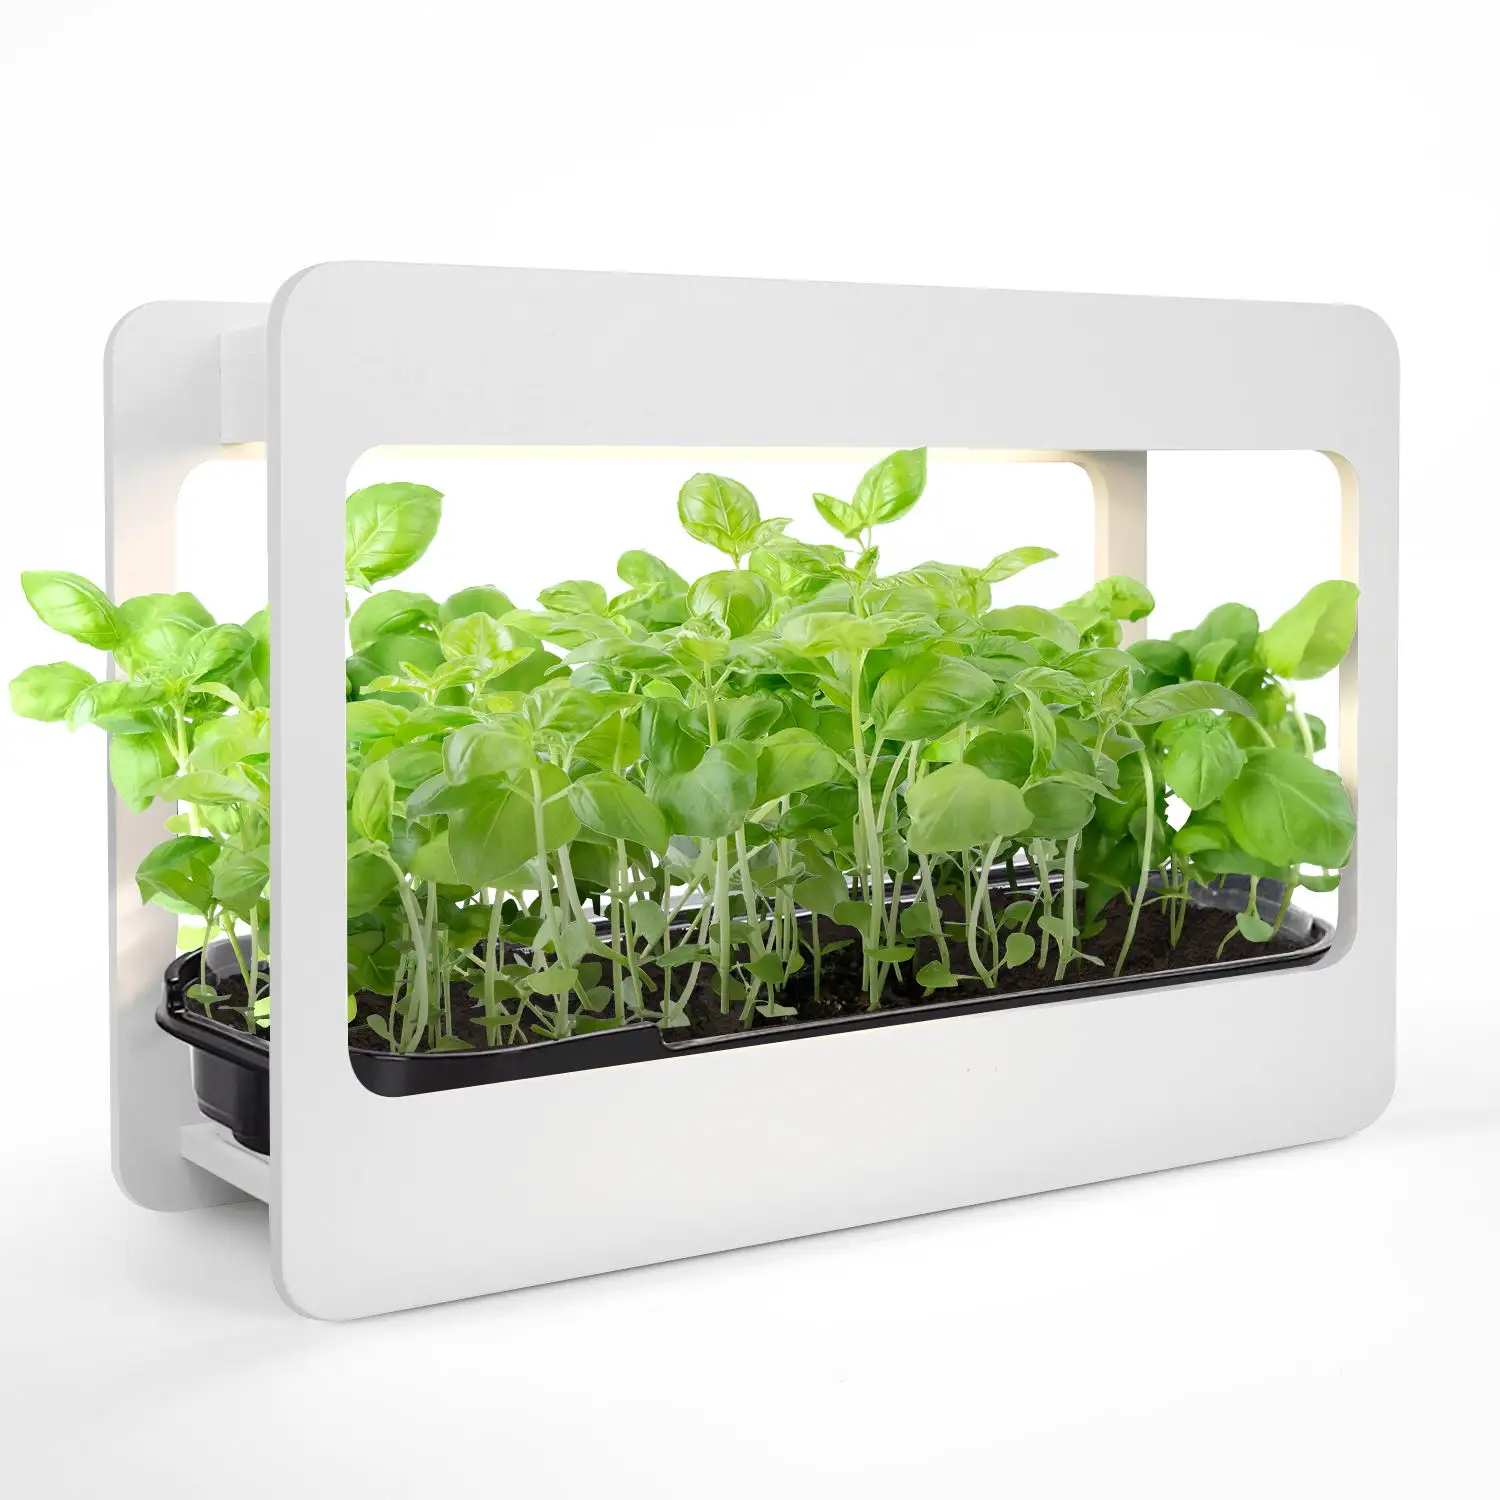 J & C Mini Garden Jardins d'herbes d'intérieur à spectre complet avec lumière de croissance LED Minuterie automatique Kit de jardin d'herbes aromatiques US Standard Plant Light